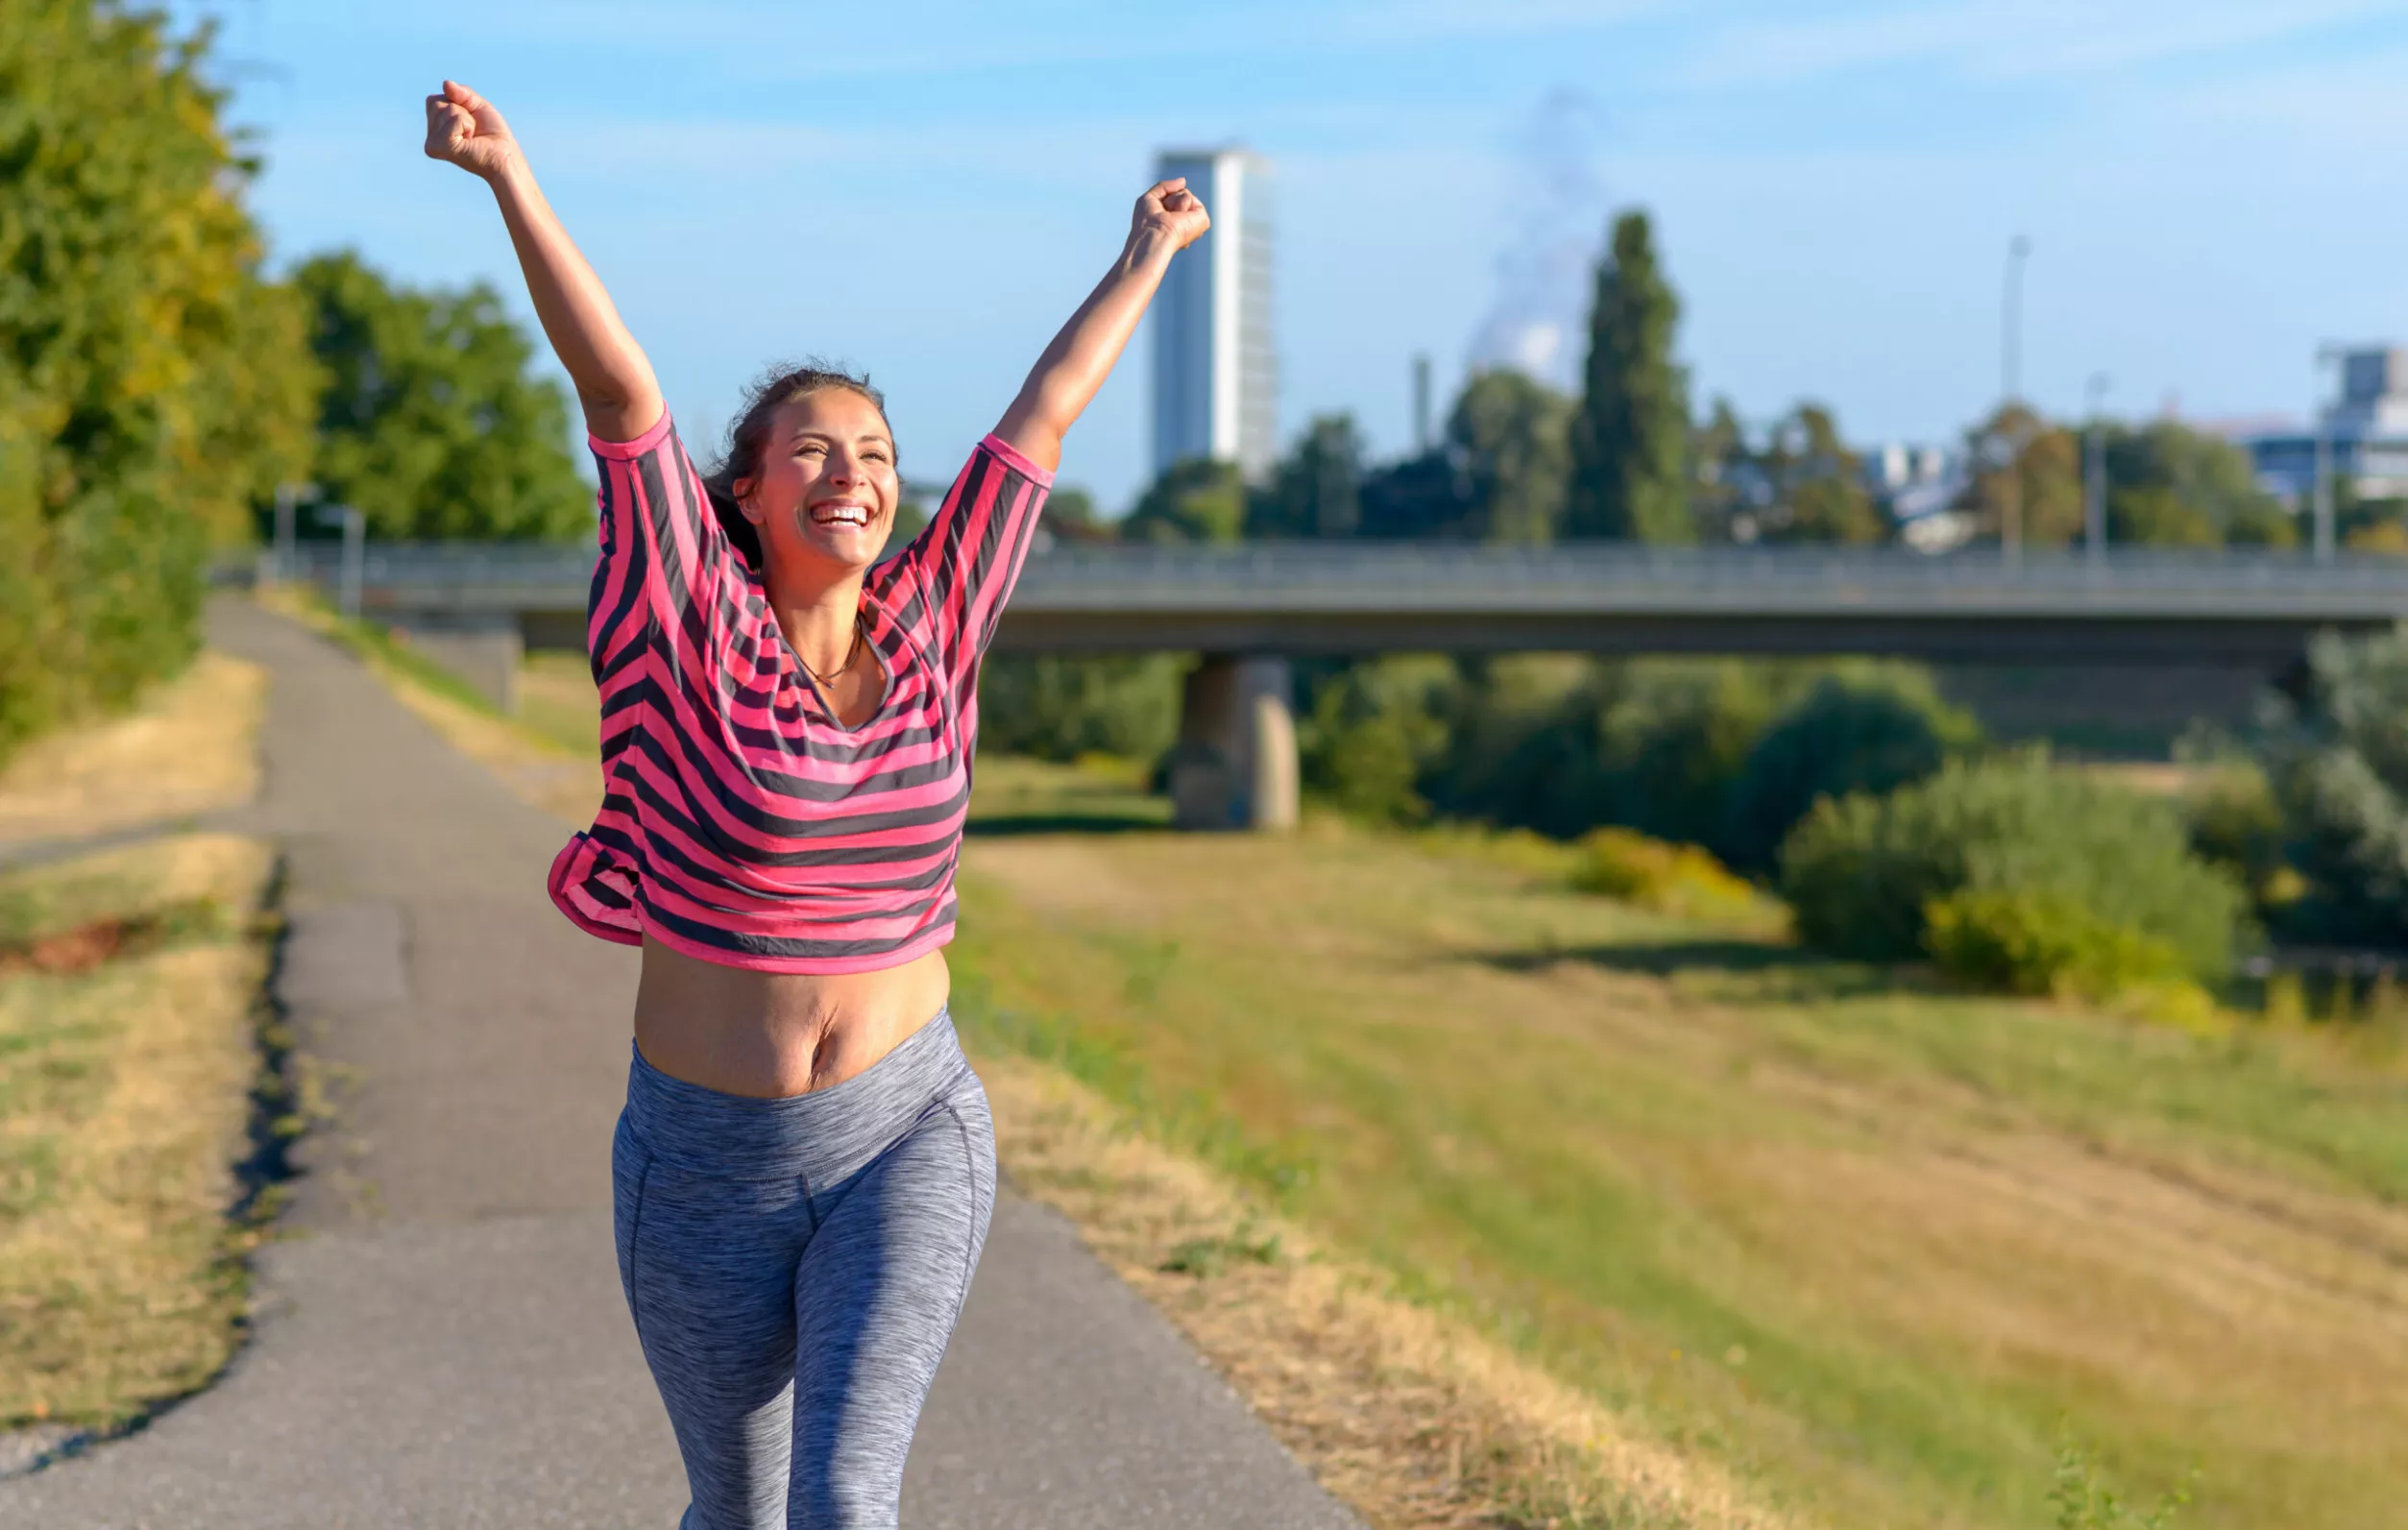 Juoksuohjelma 5 km matkalle – nainen tuulettaa saavutettuaan juoksutavoitteen